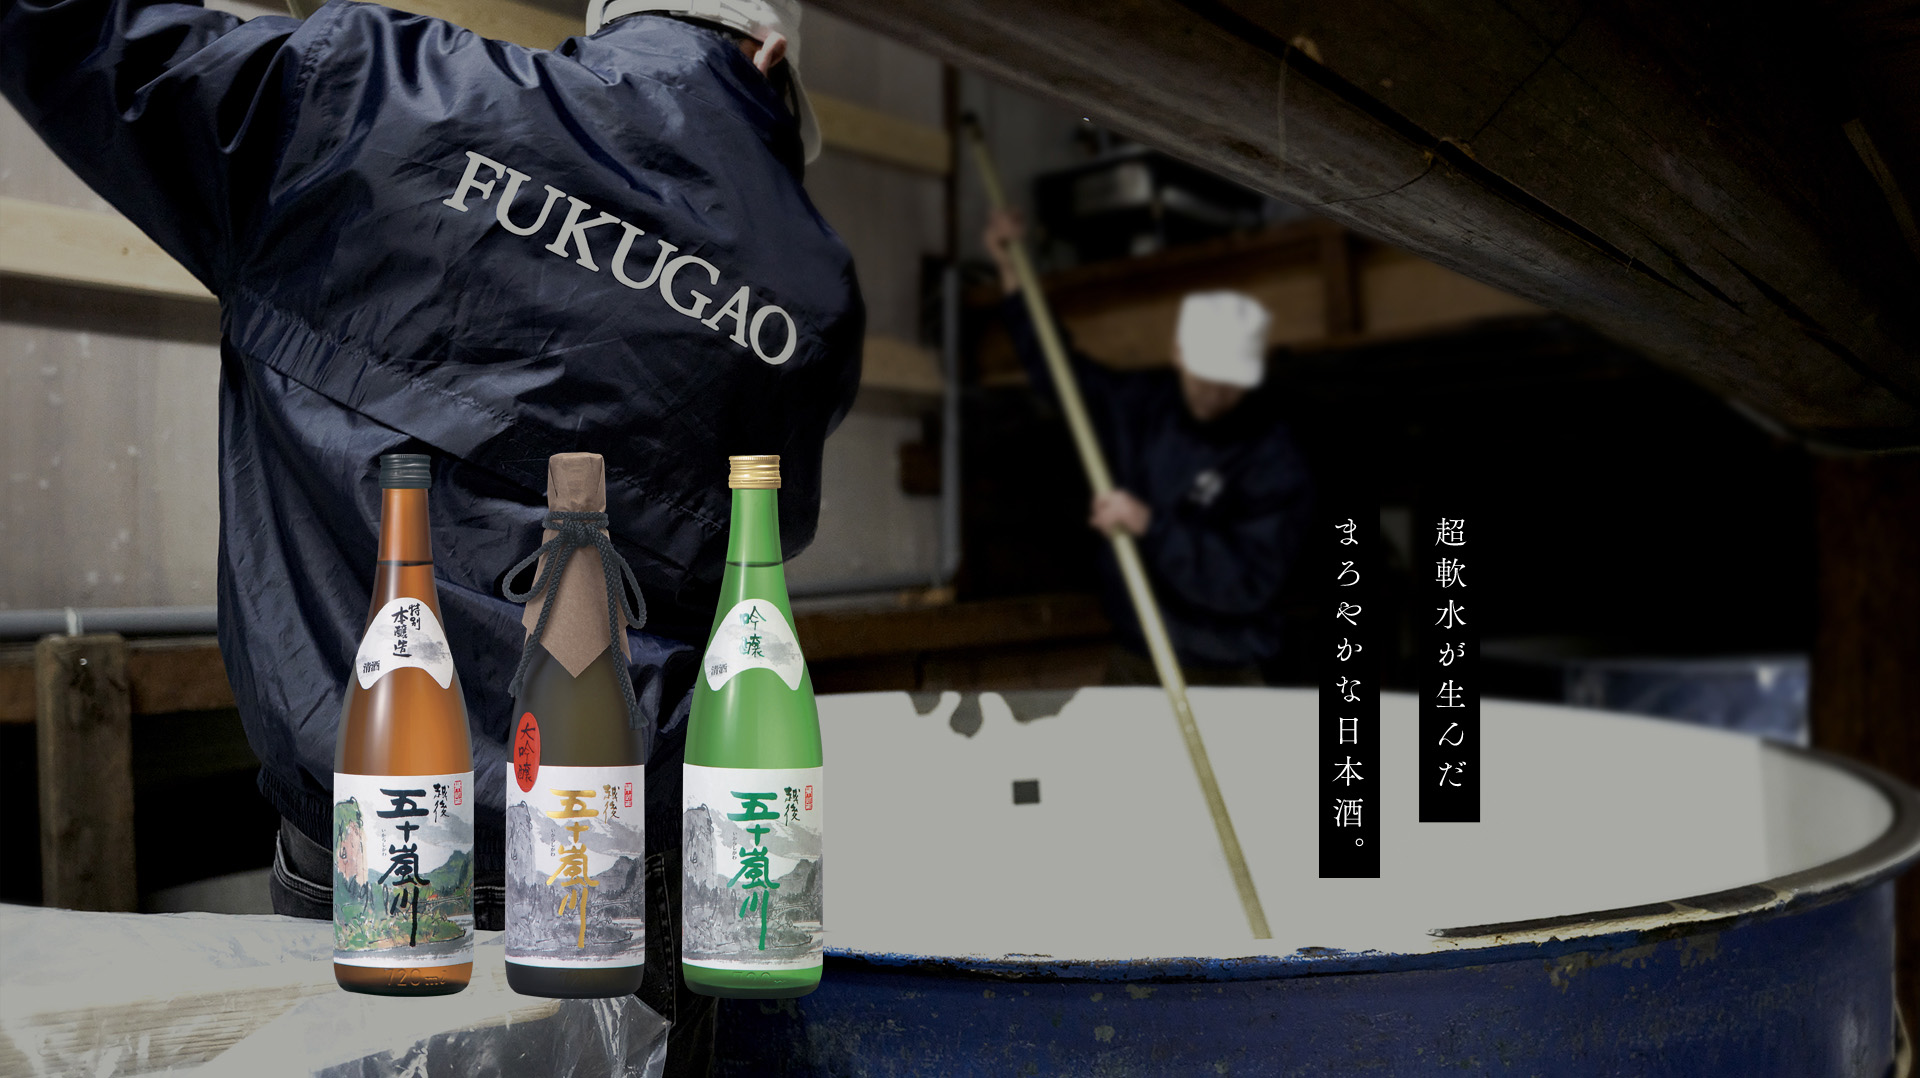 福顔酒造株式会社 | FUKUGAO “SAKE” BREWERY CO., LTD – 真面目な手造り、五感による酒造り、福顔酒造